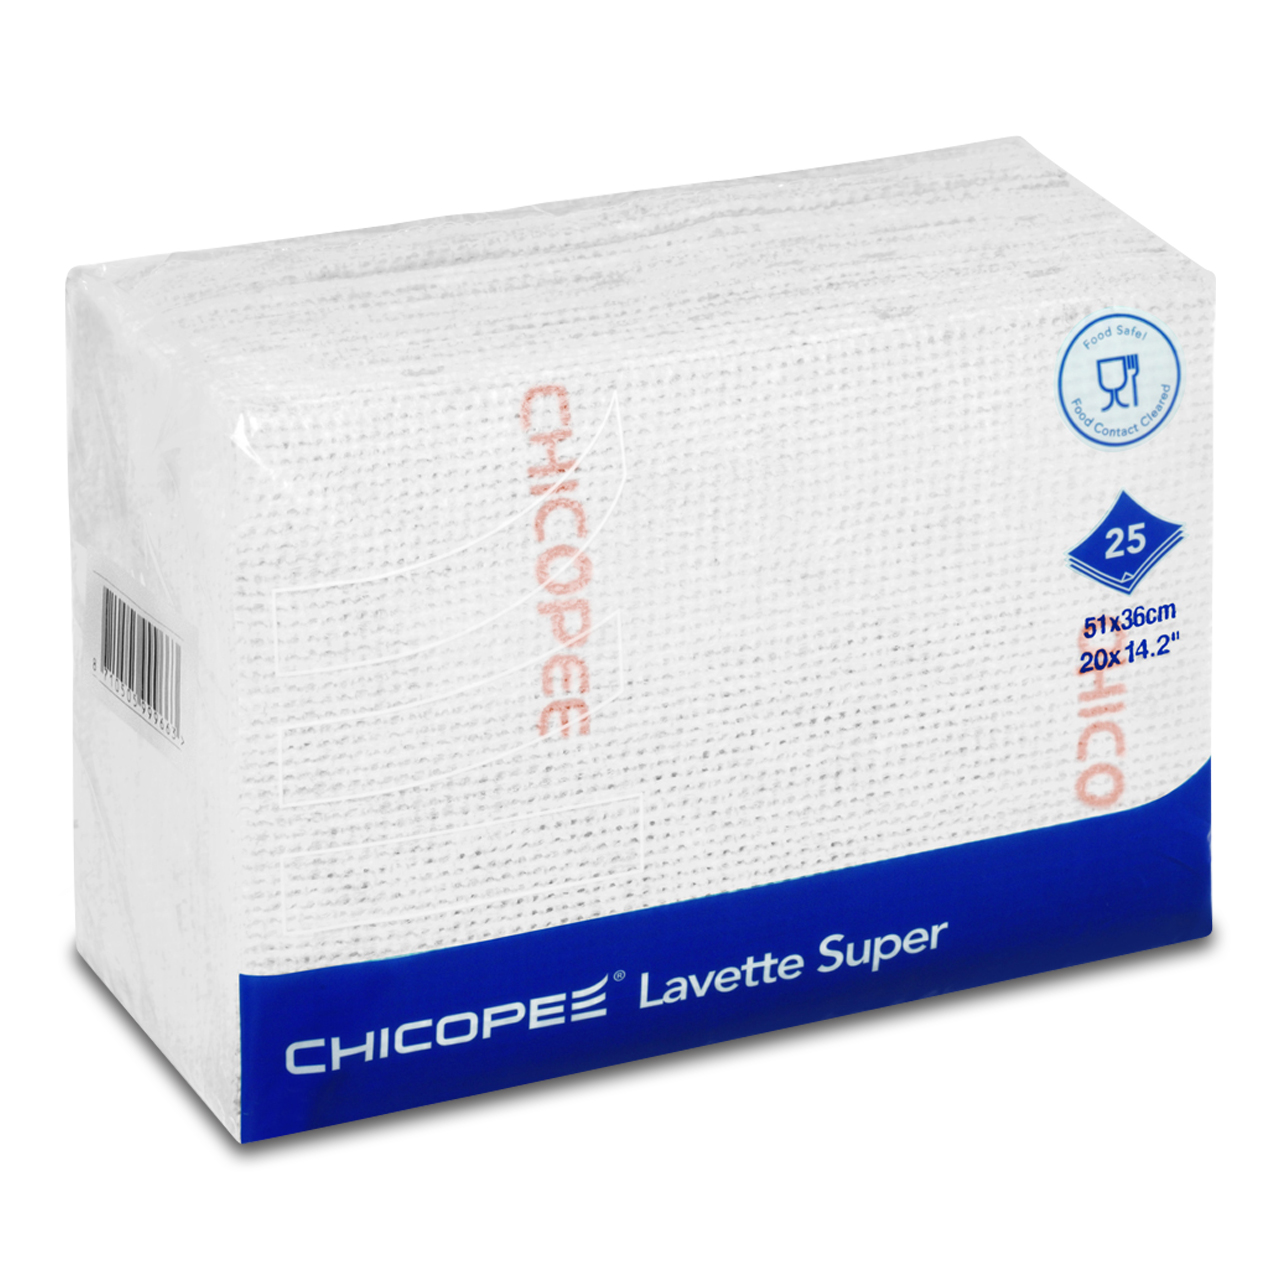 CHICOPEE® LAVETTE SUPER